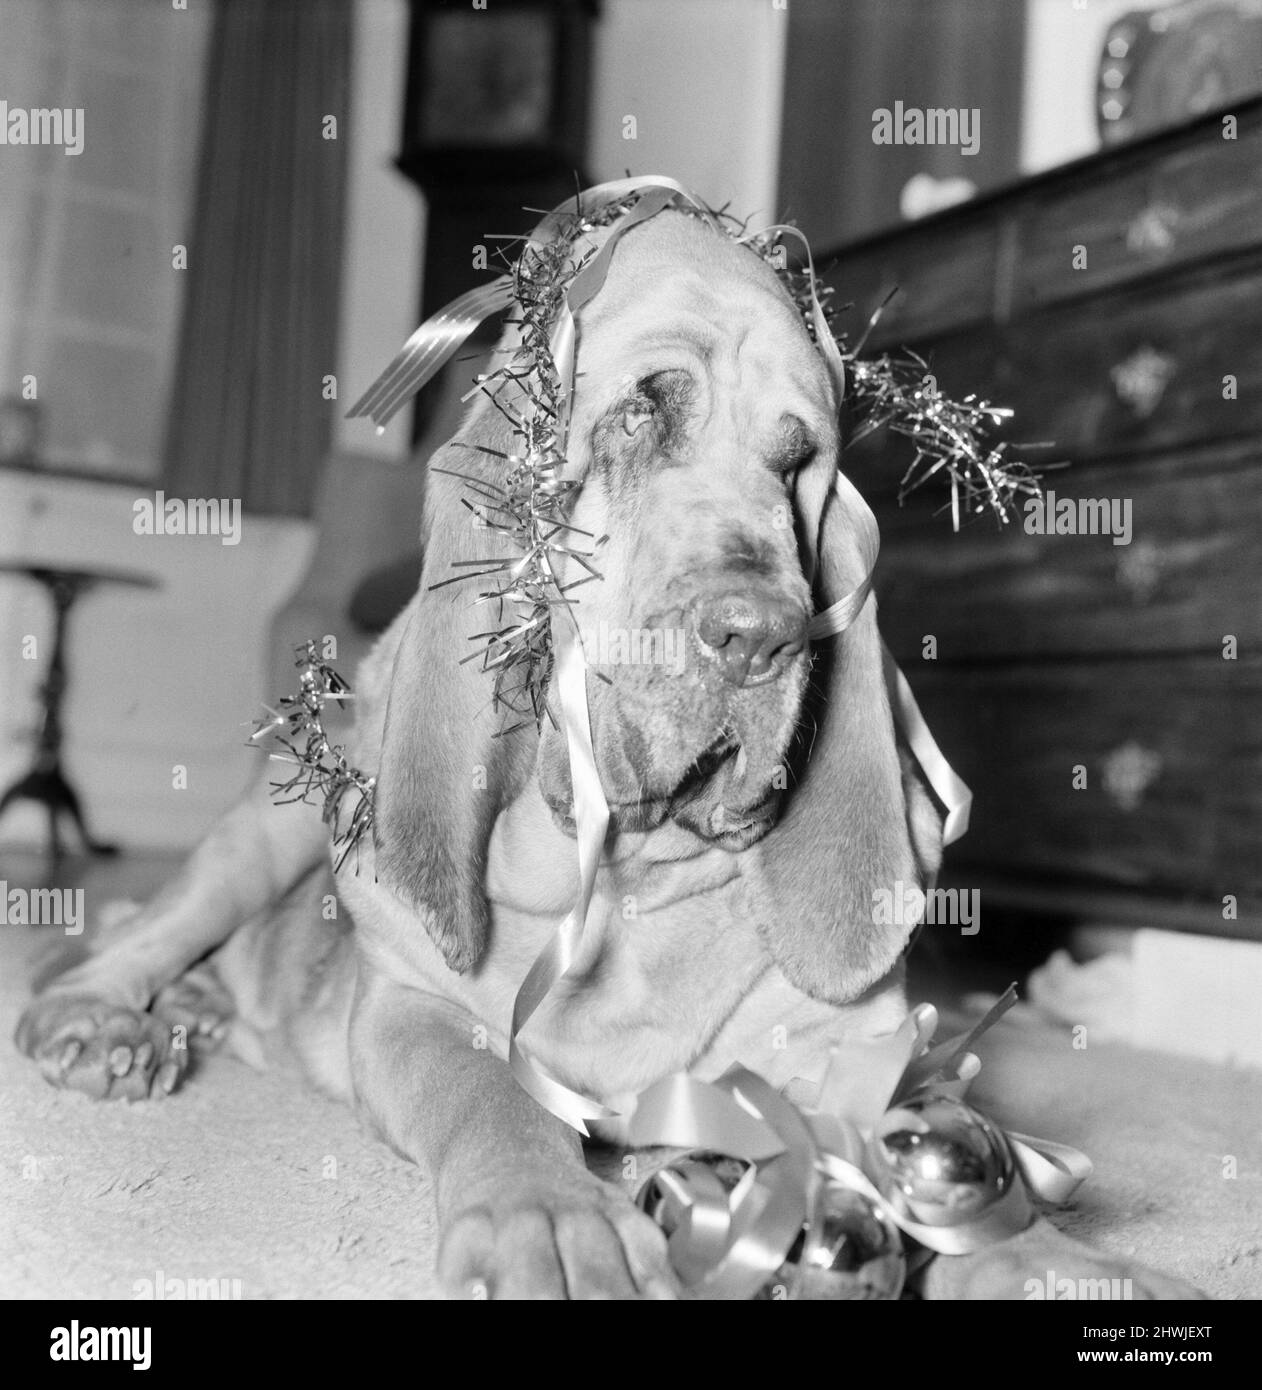 Bloodhound Dog. December 1972 72-11445-001 Stock Photo